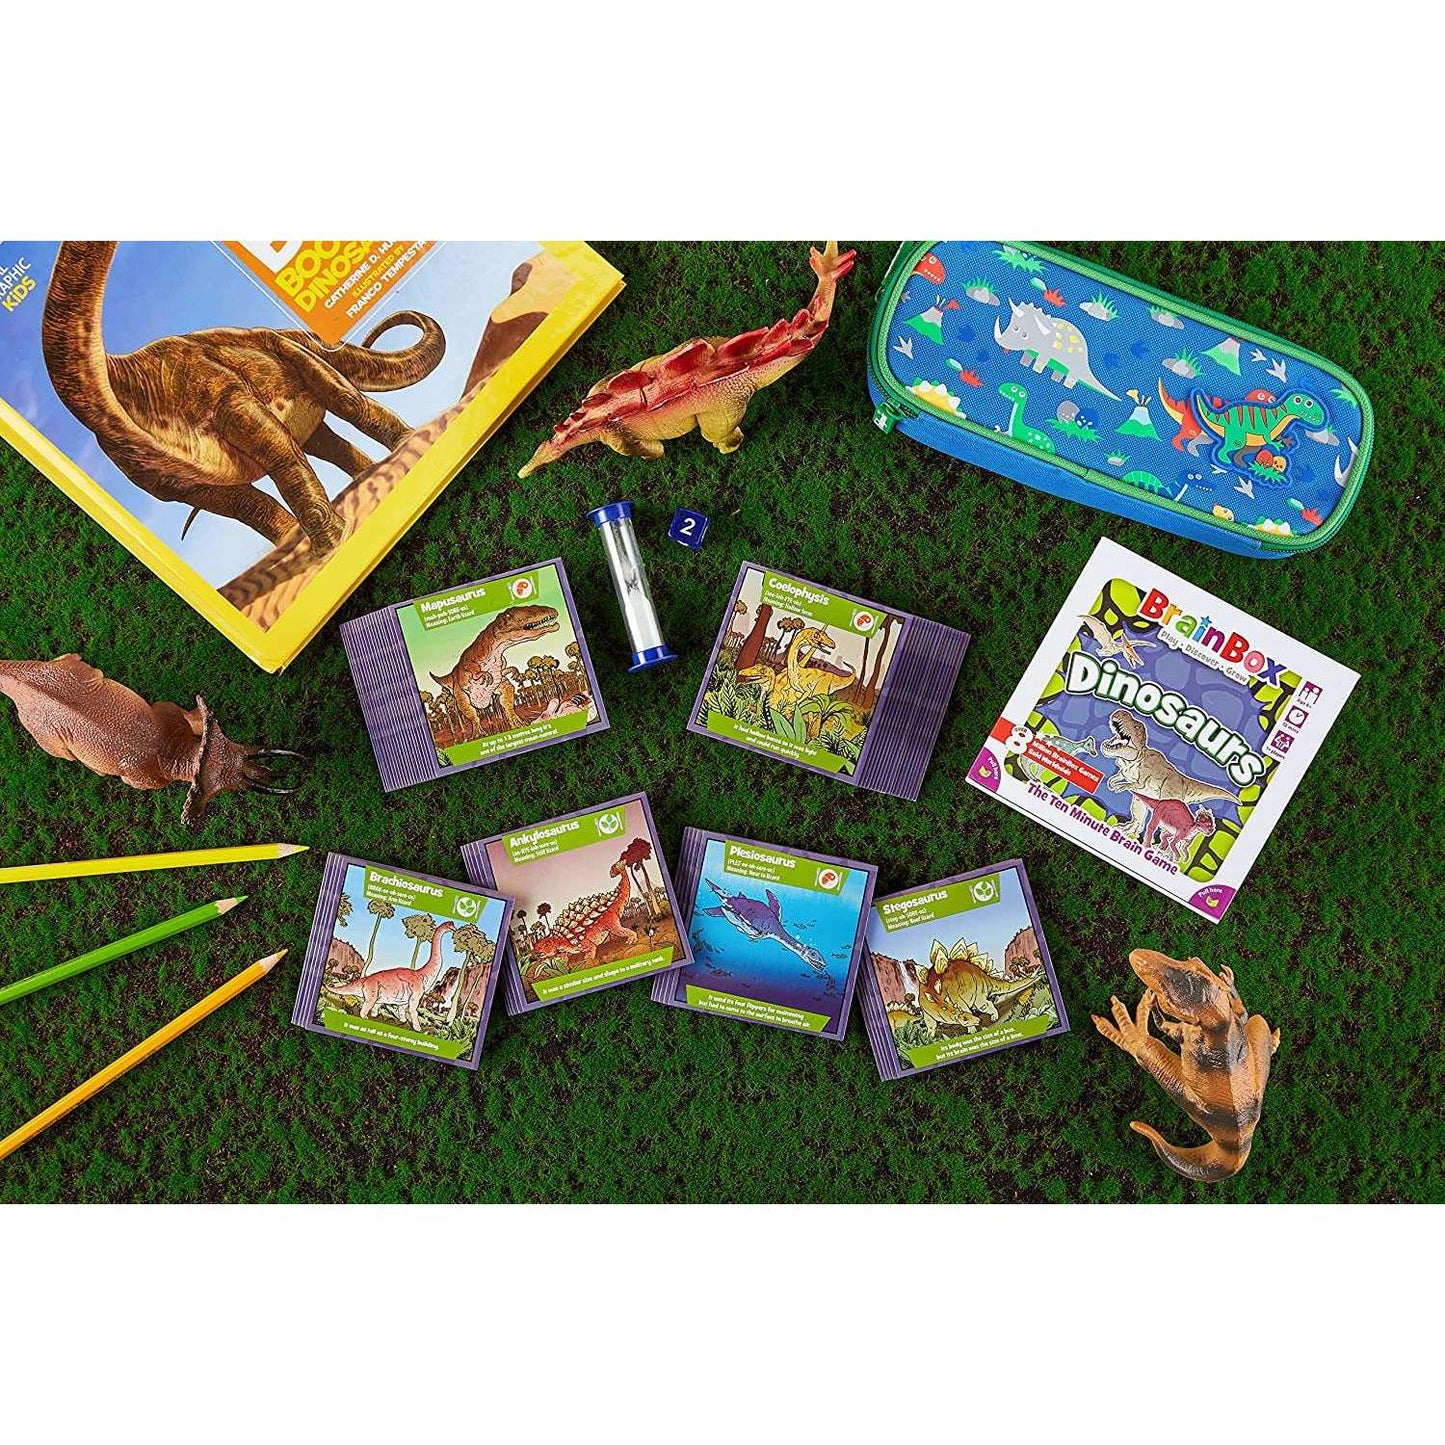 Toys N Tuck:Brainbox - Dinosaurs,Asmodee